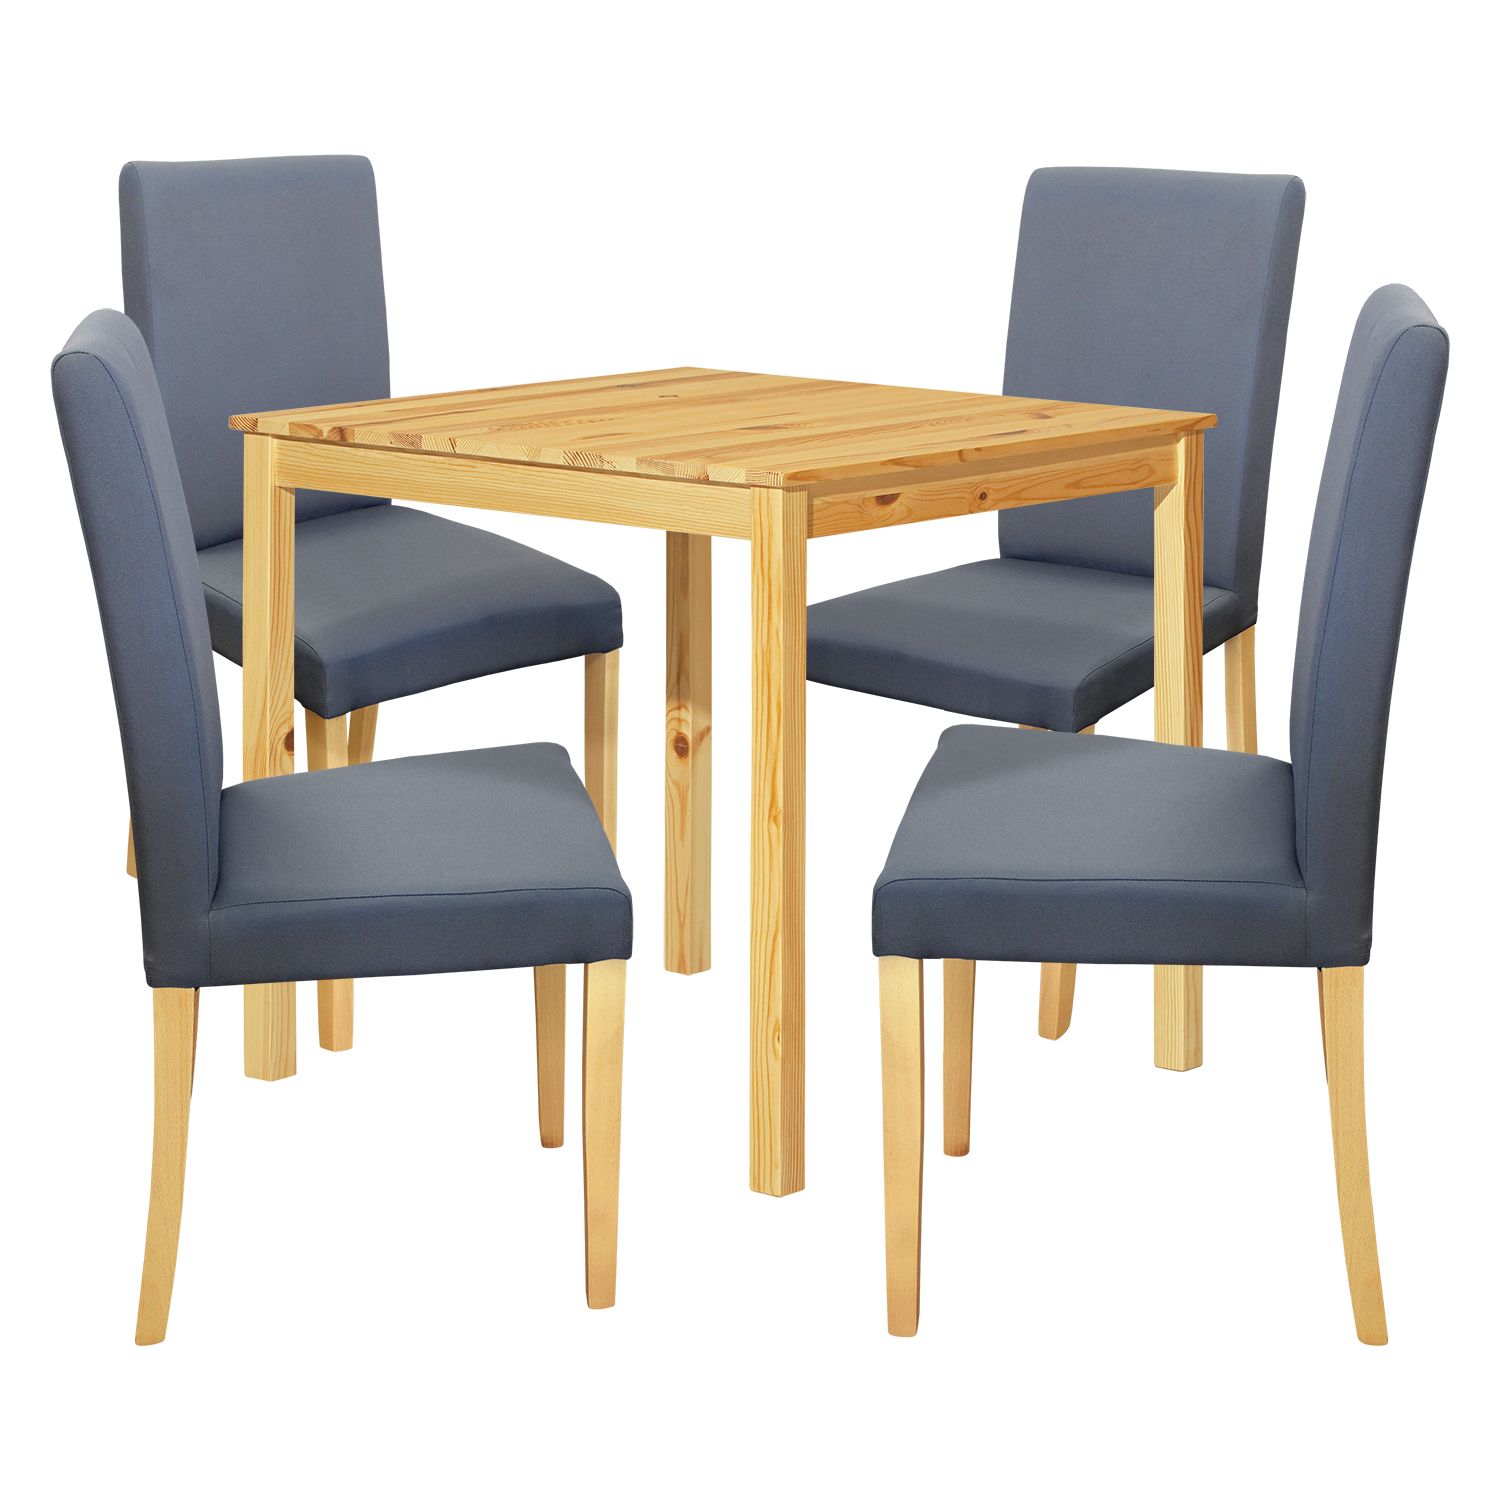 Jídelní stůl 8842 lak + 4 židle PRIMA 3038 šedá/světlé nohy - IDEA nábytek